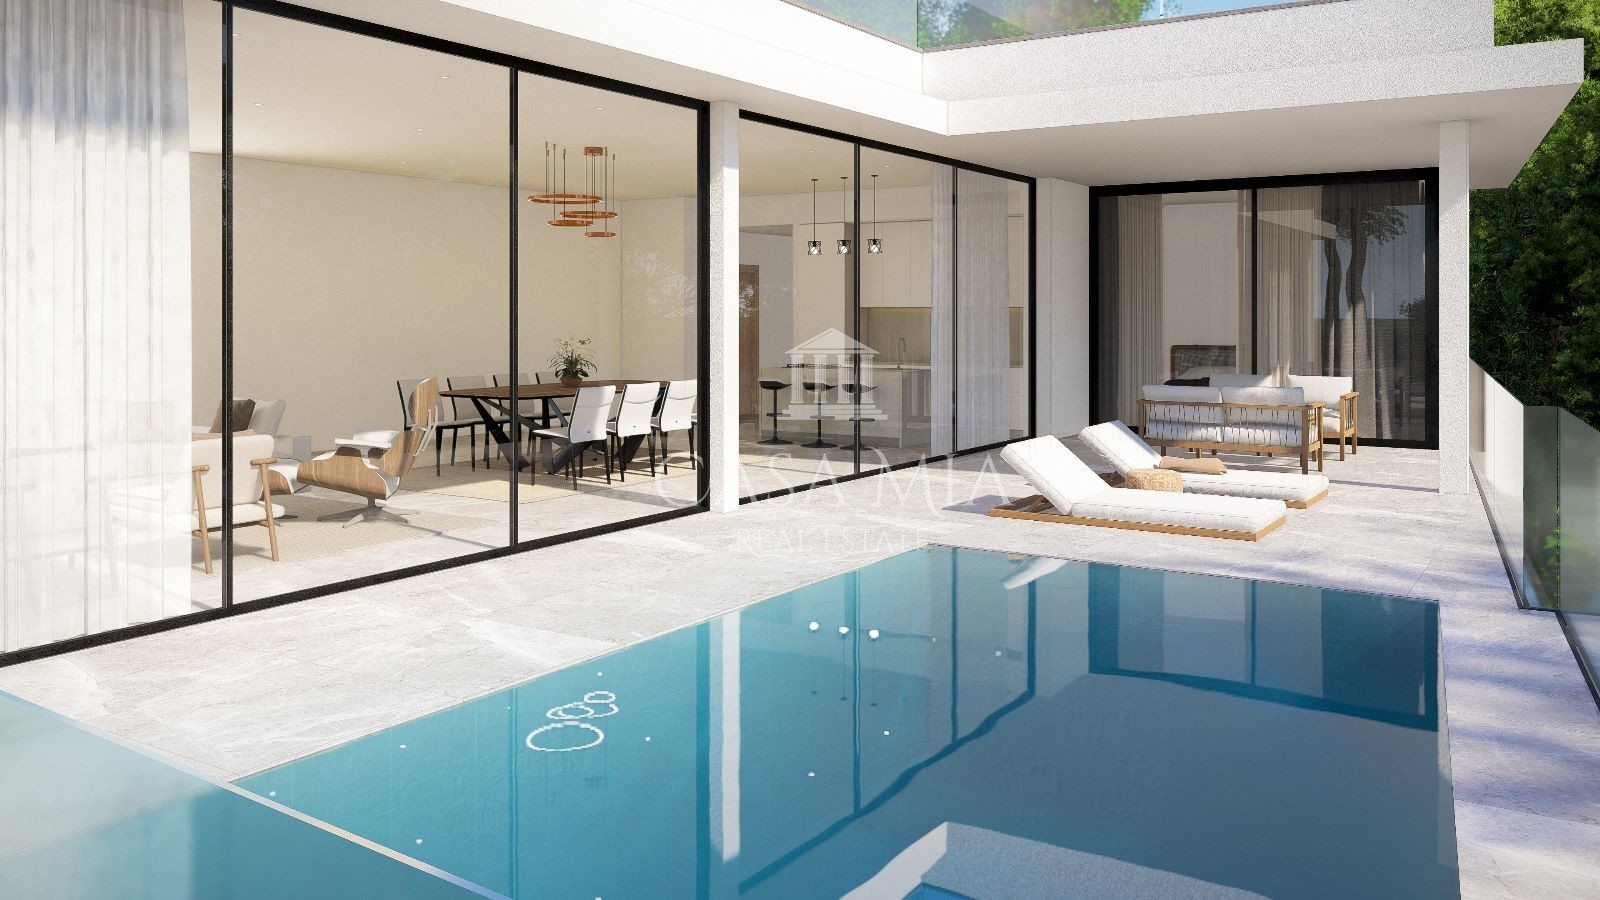 Project: Fantastic new build villa with all amenities, Costa d'en Blanes